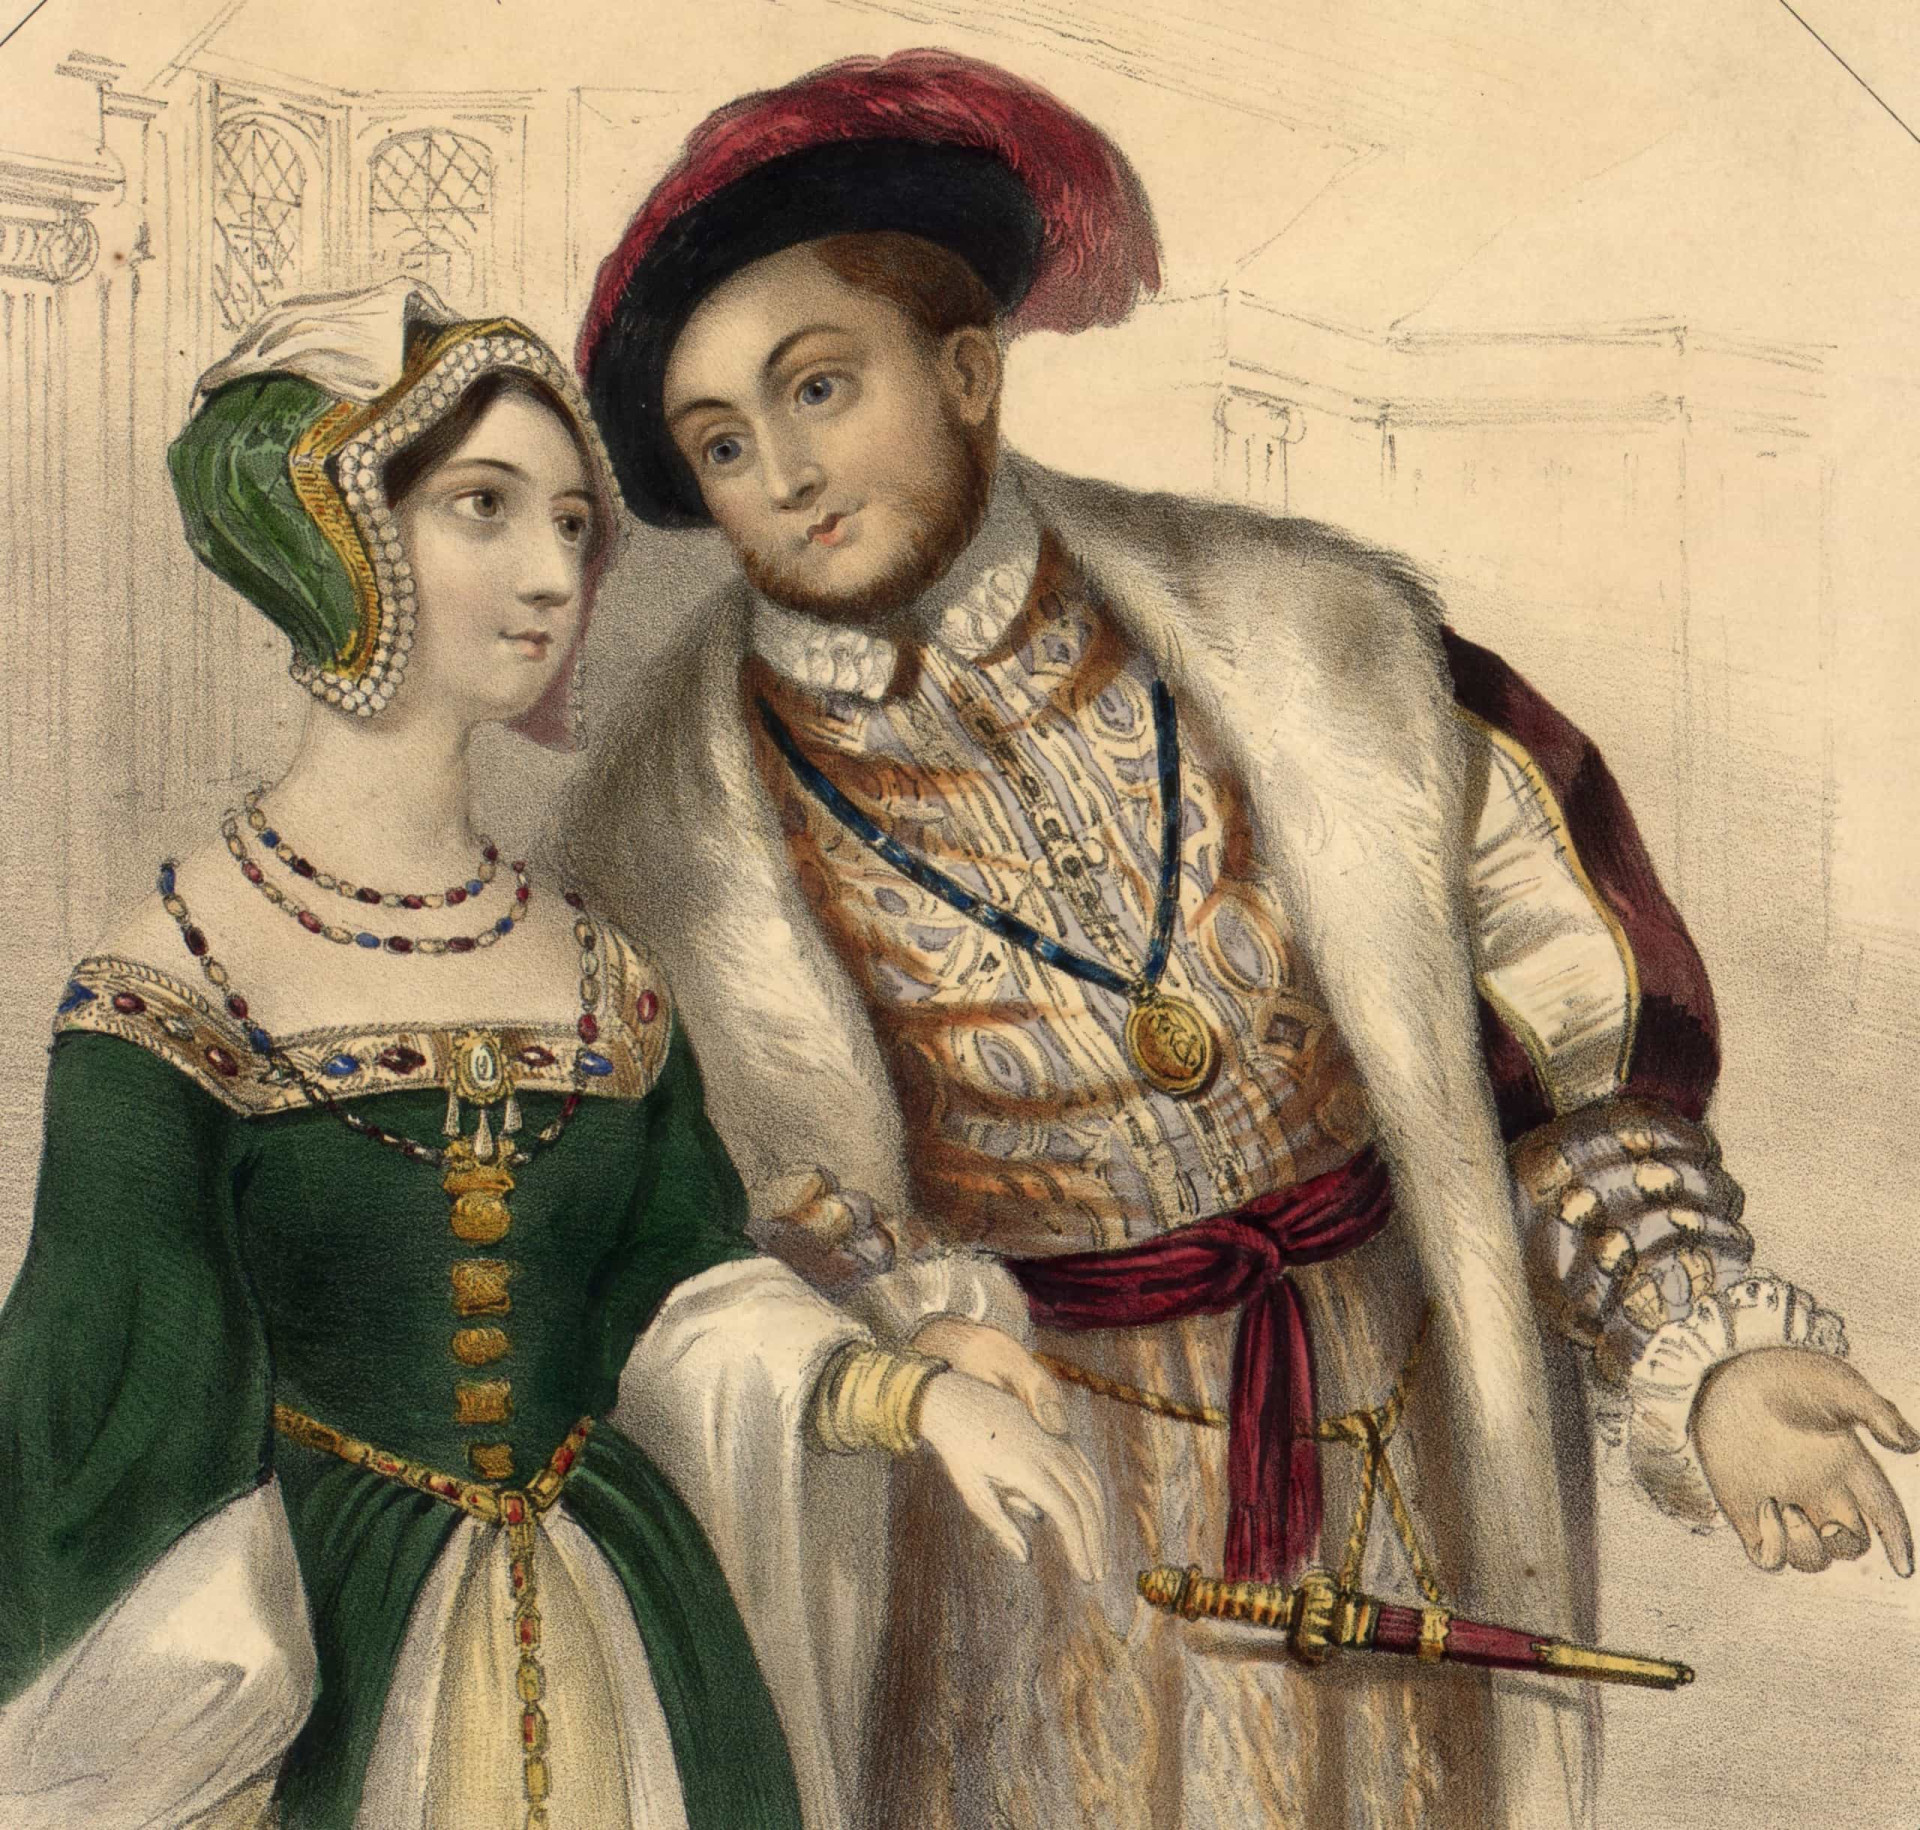 <p><span><span>Ana foi inicialmente noiva de Henry Percy, filho de Henry Percy, 5º Conde de Northumberland.</span></span> <span><span>No entanto, após o encontro deles em 1526, ela mudou de ideia.</span></span> <span><span>O casamento do Rei Henrique VIII com Ana Bolena aconteceu em janeiro de 1533, enquanto ele ainda era legalmente casado com Catarina de Aragão.</span></span></p><p><a href="https://www.msn.com/pt-br/community/channel/vid-7xx8mnucu55yw63we9va2gwr7uihbxwc68fxqp25x6tg4ftibpra?cvid=94631541bc0f4f89bfd59158d696ad7e">Siga-nos e tenha acesso a um excelente conteúdo exclusivo todos os dias</a></p>